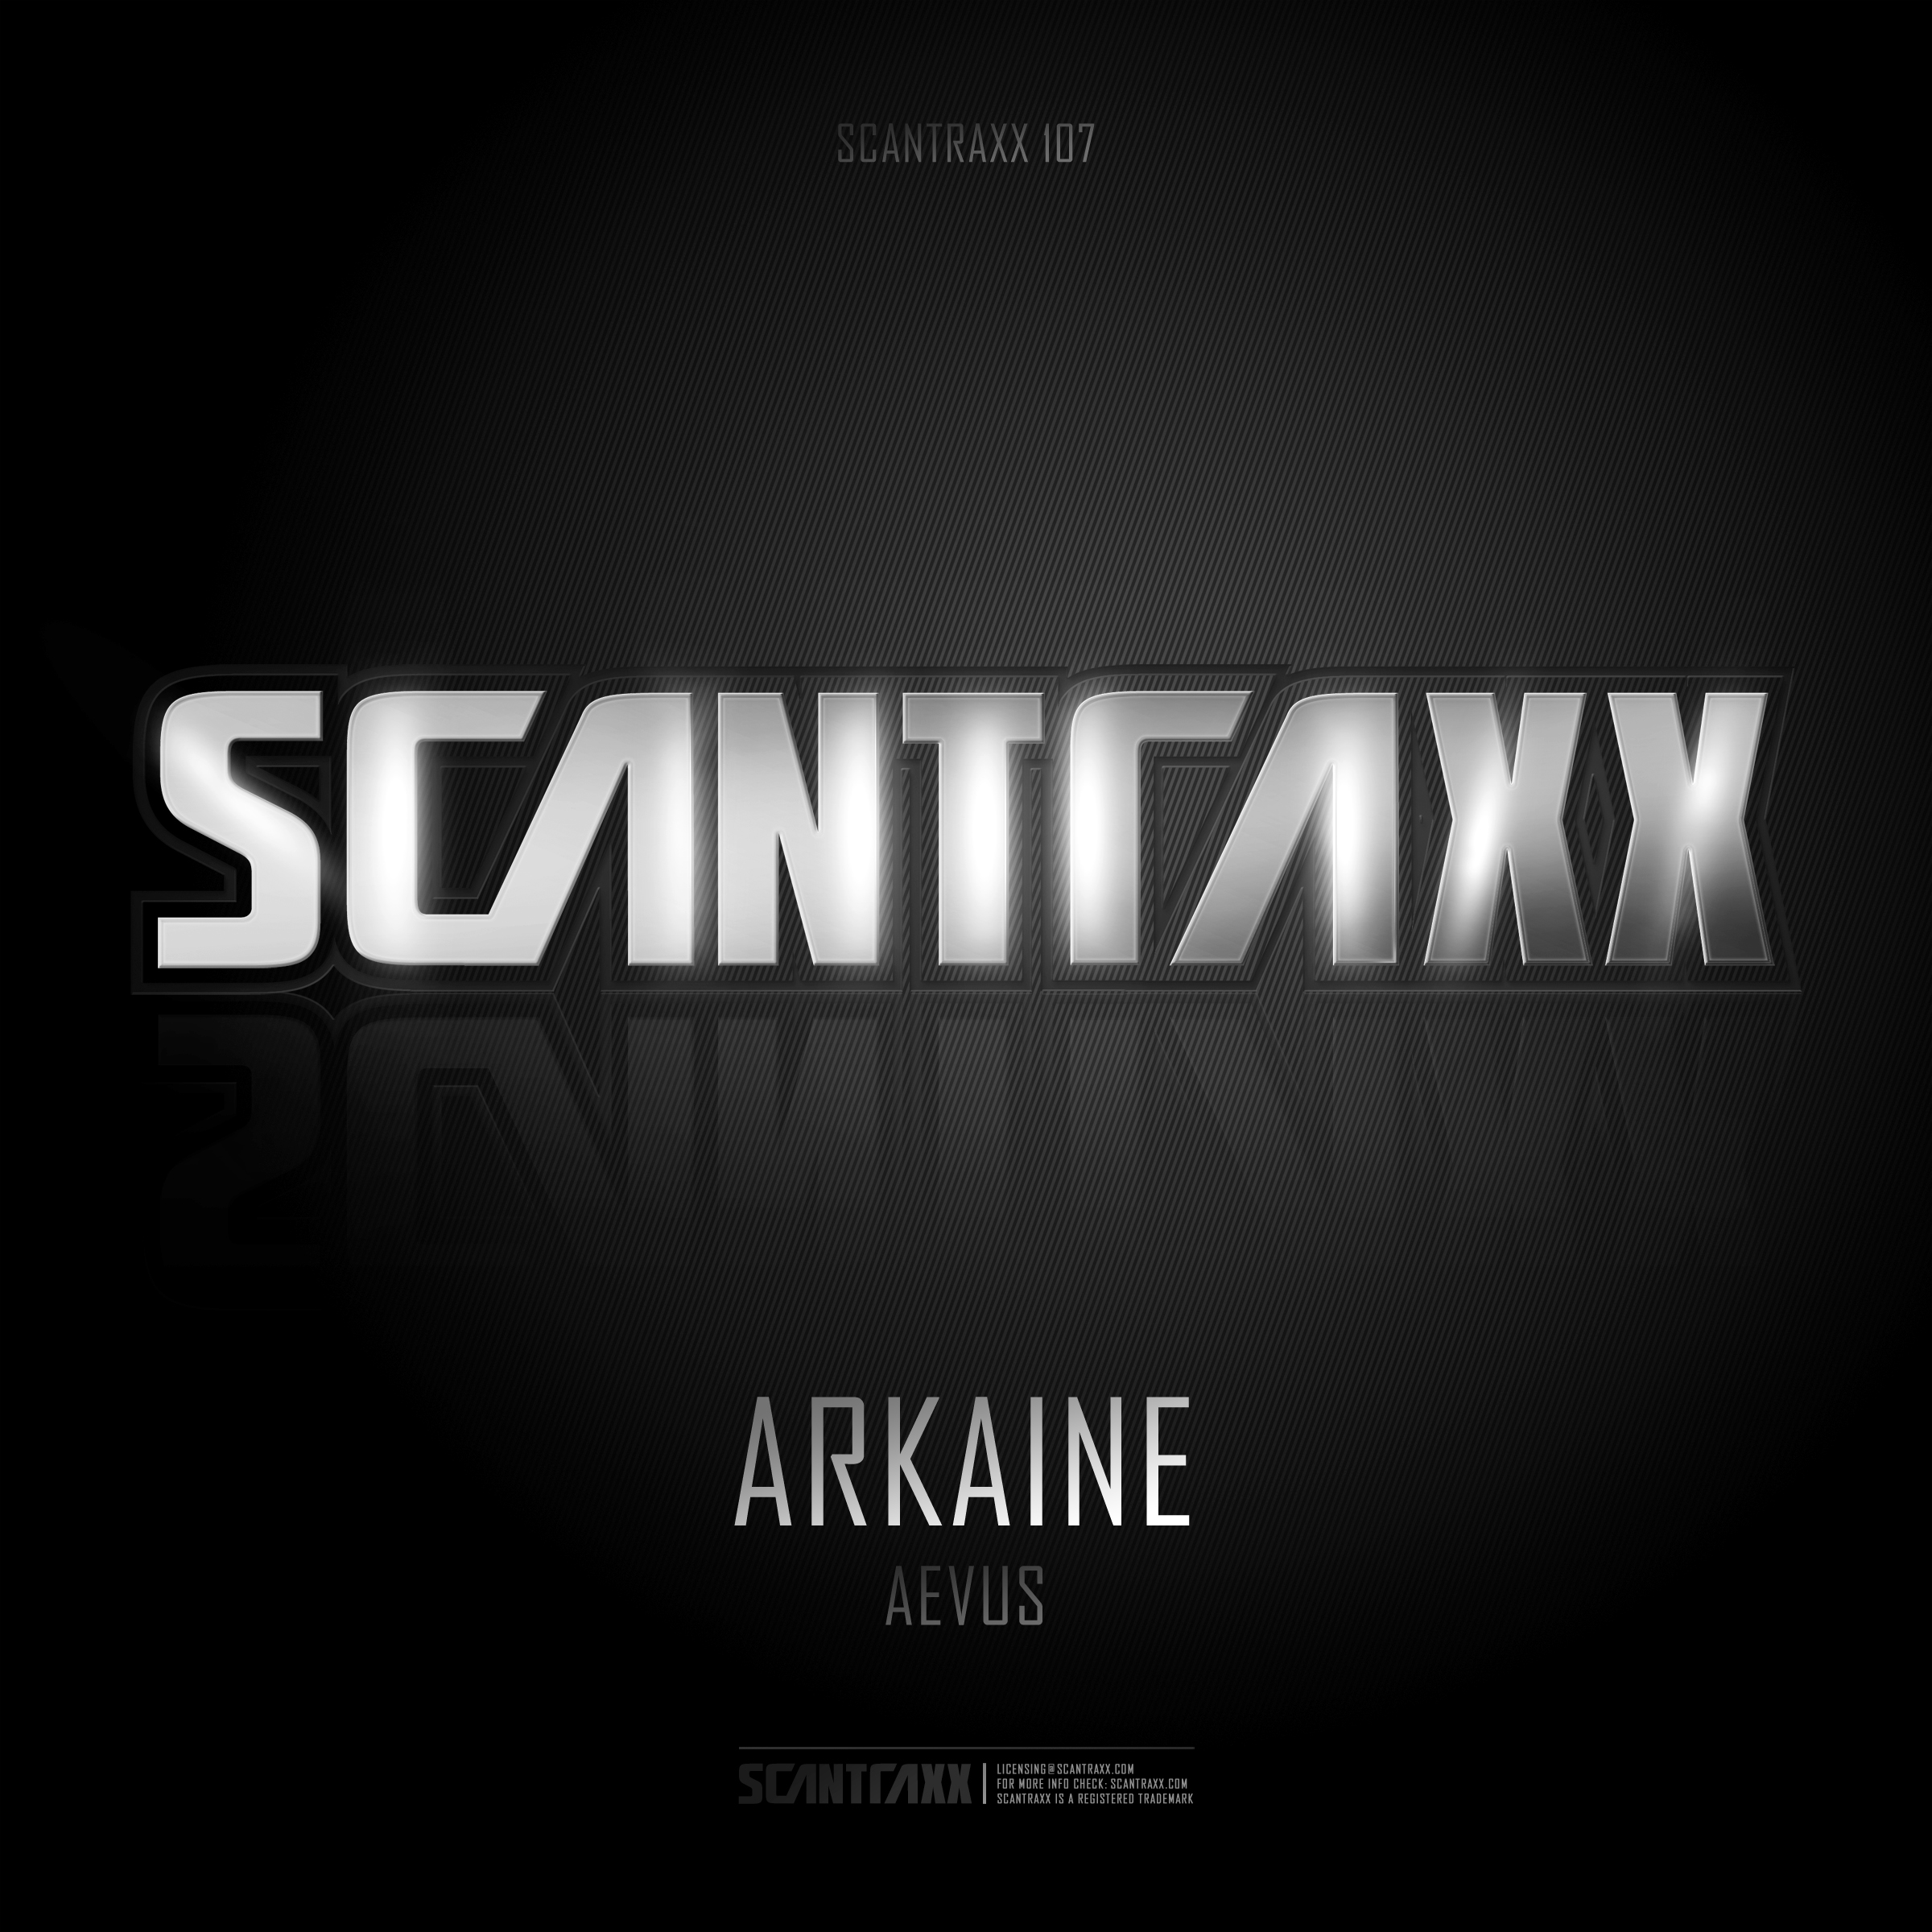 SCANTRAXX107